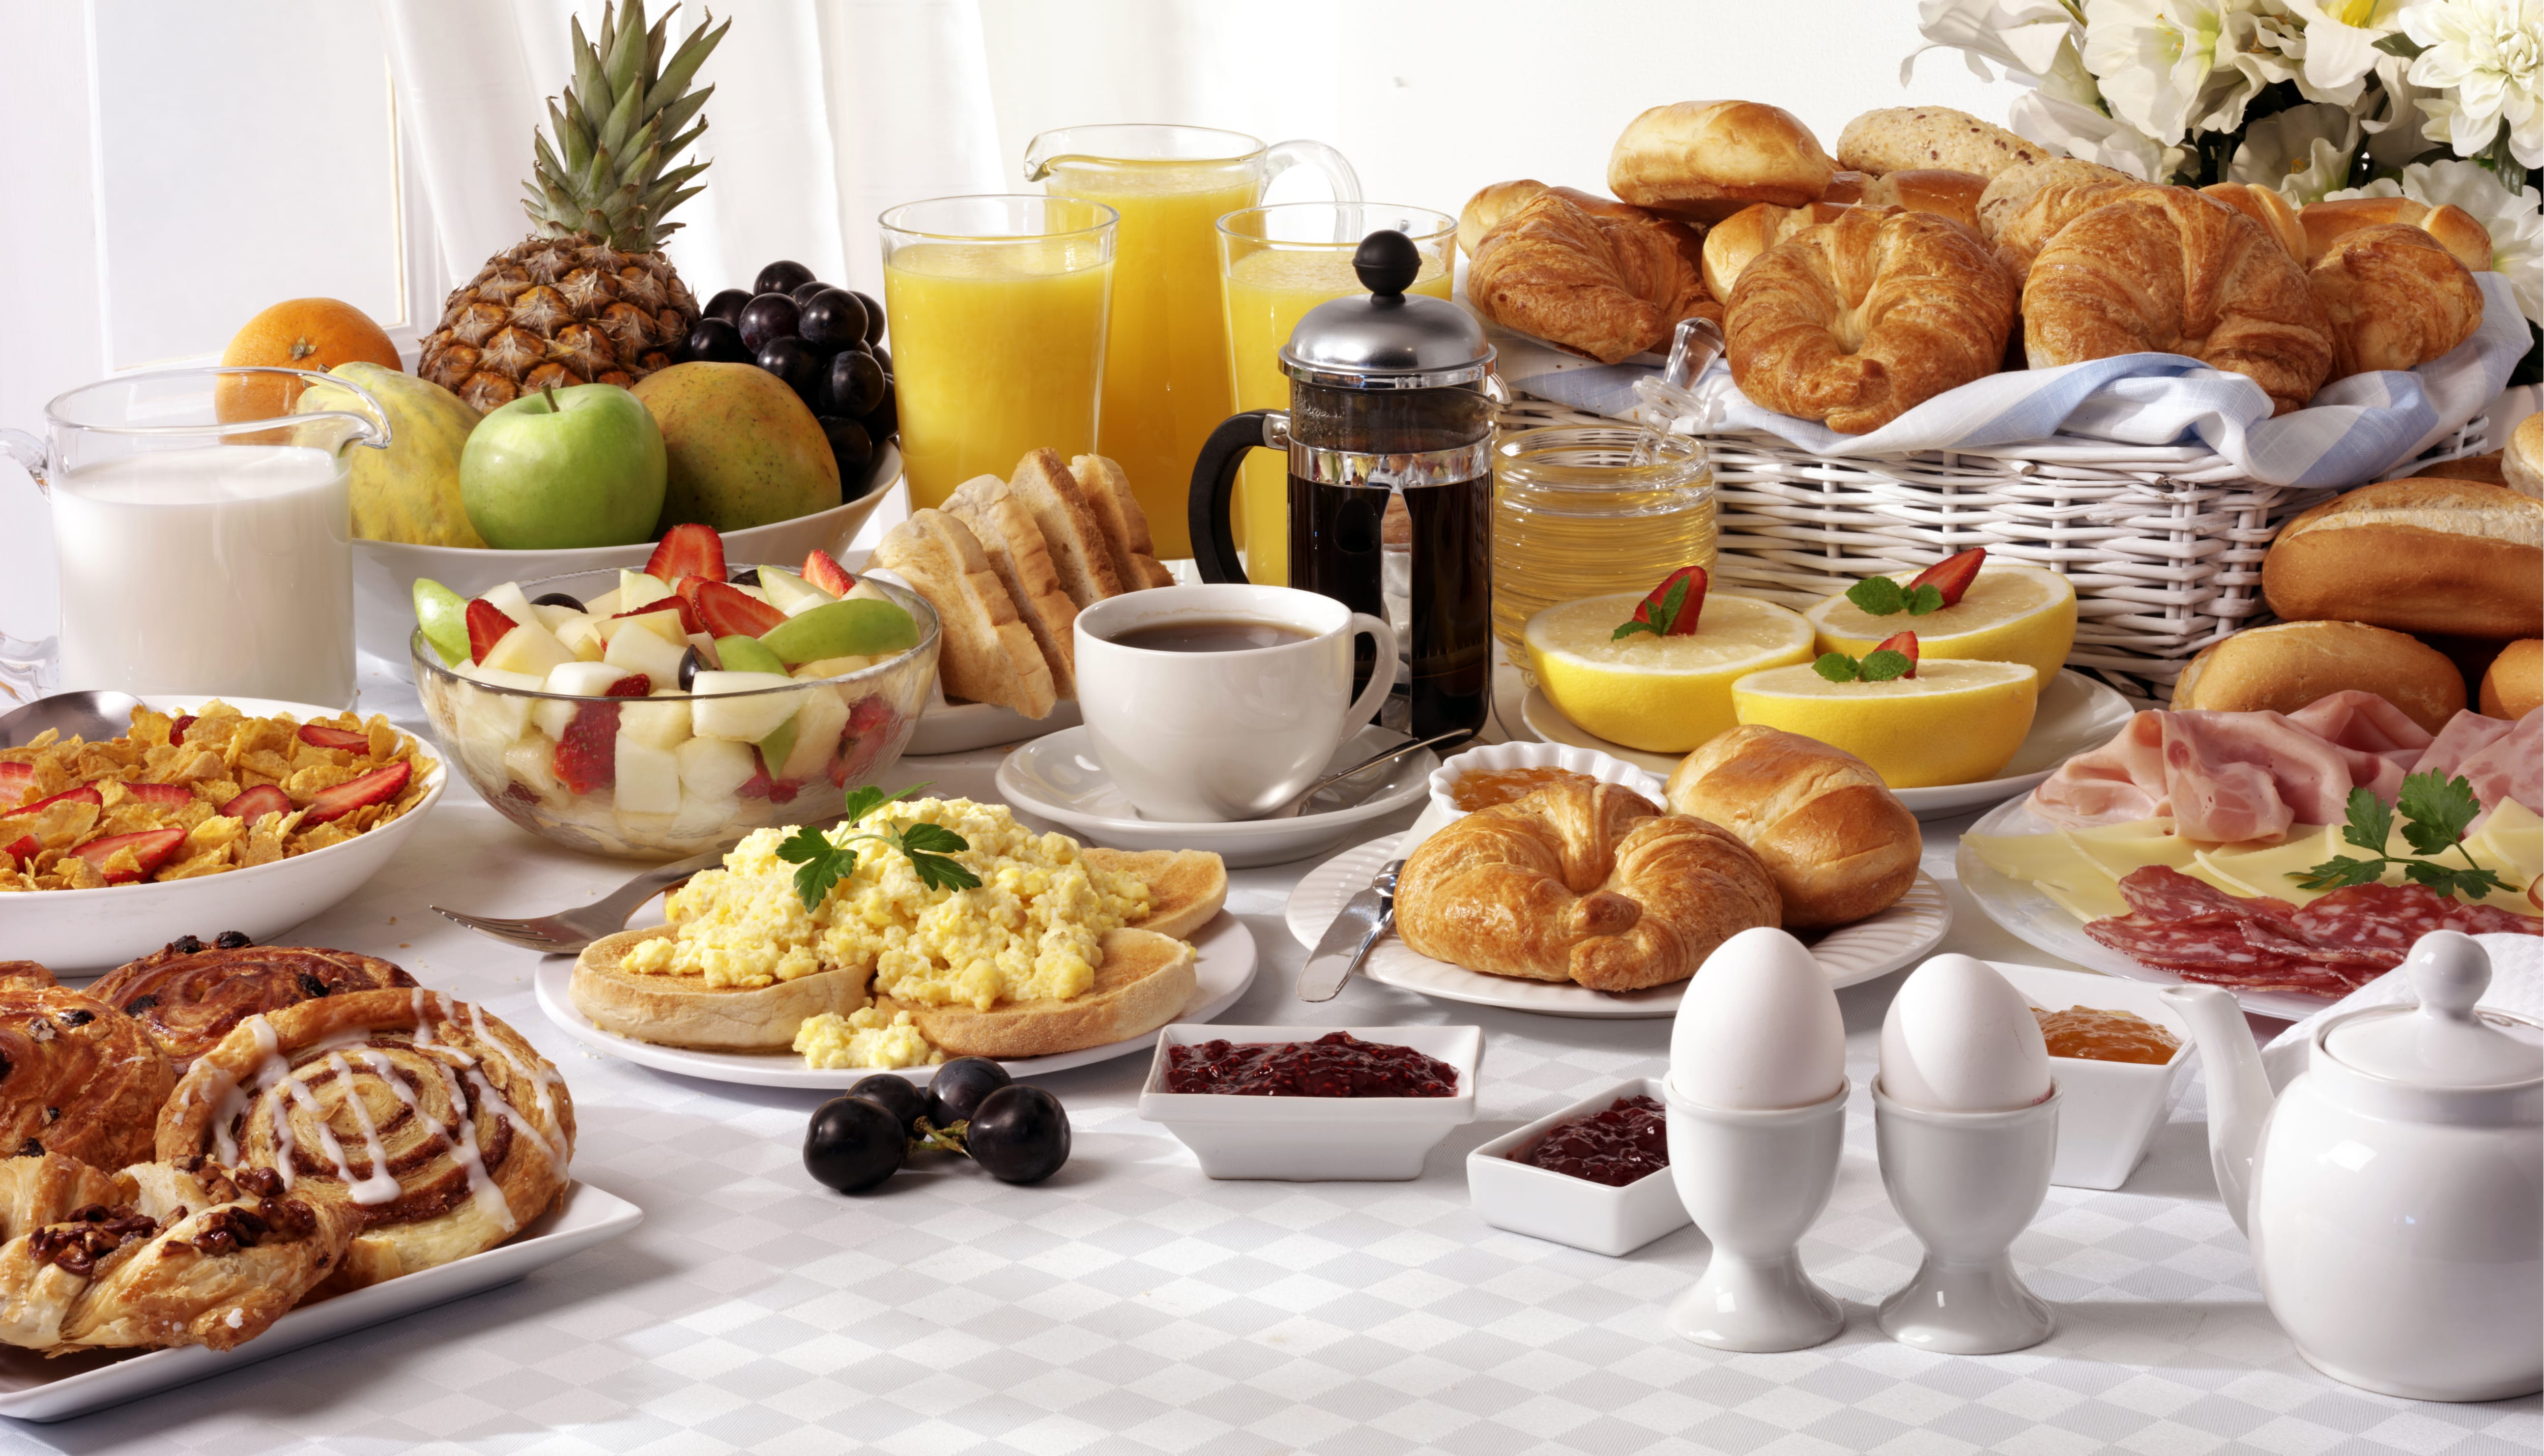 breakfast spread